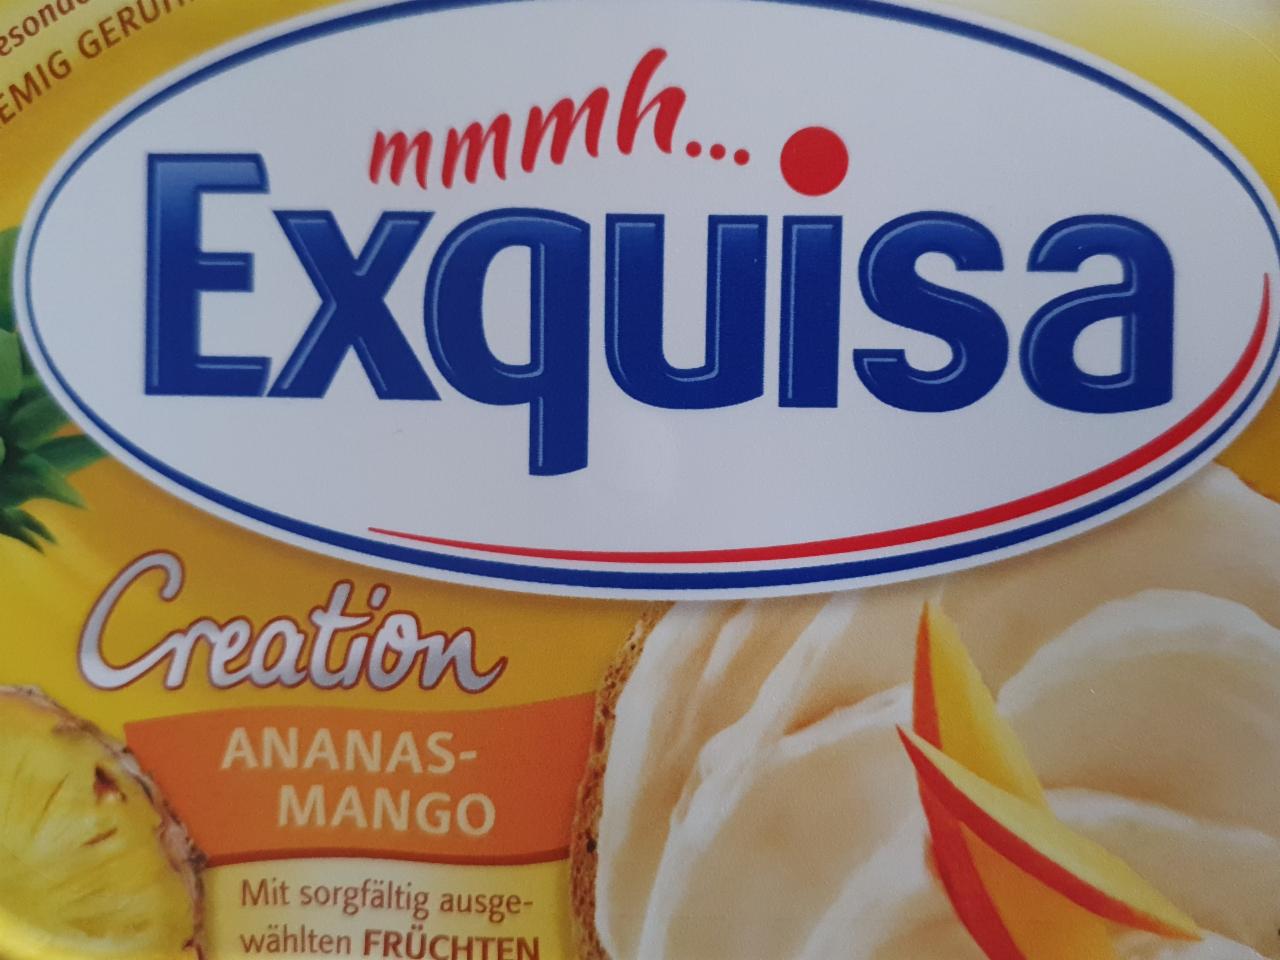 Фото - крем-сыр Креатион ананас-манго Exquisa